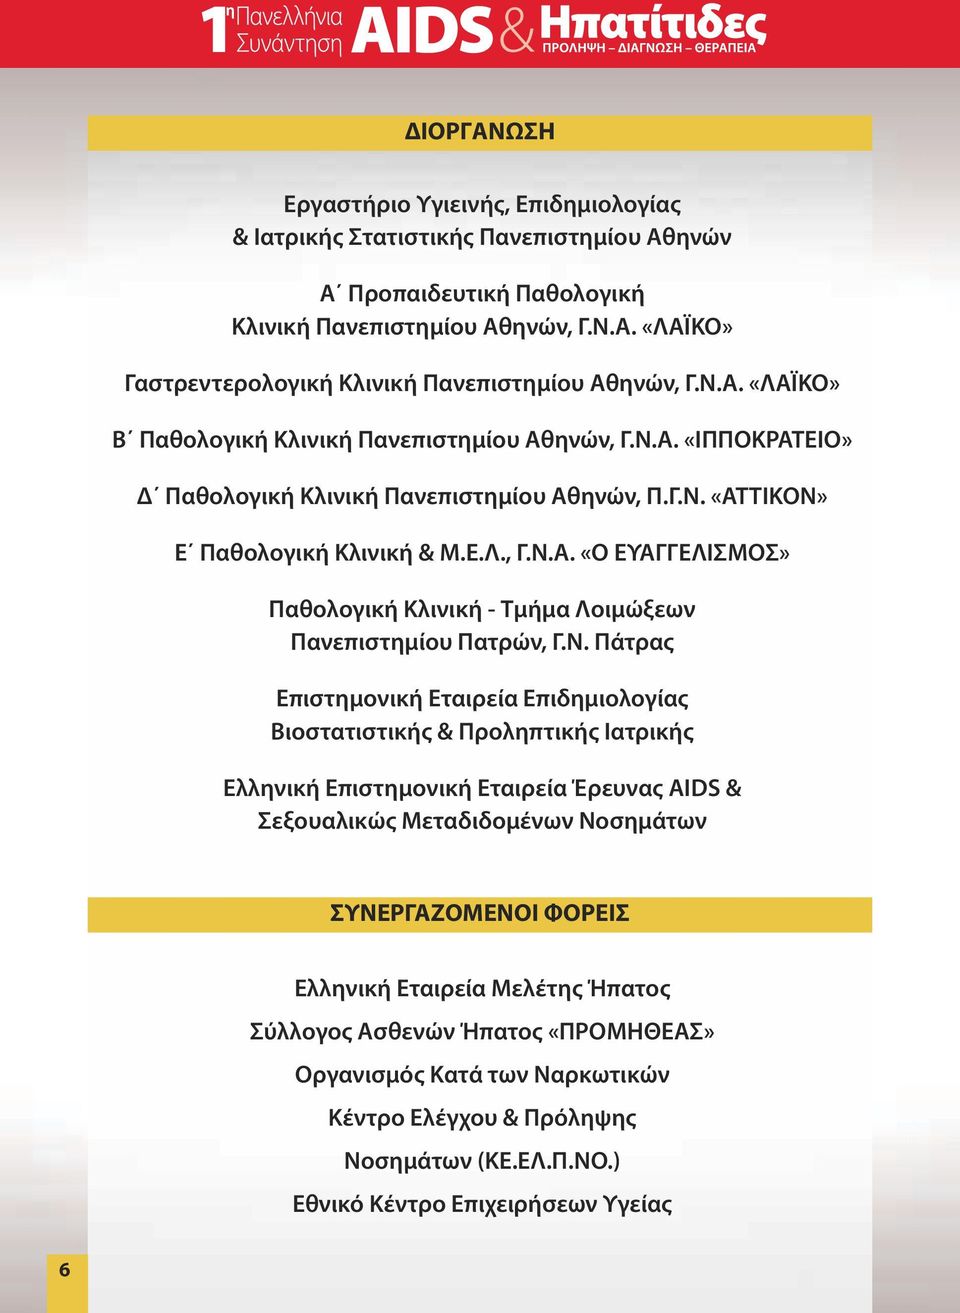 Ν. Πάτρας Επιστημονική Εταιρεία Επιδημιολογίας Βιοστατιστικής & Προληπτικής Ιατρικής Ελληνική Επιστημονική Εταιρεία Έρευνας AΙDS & Σεξουαλικώς Μεταδιδομένων Νοσημάτων ΣΥΝΕΡΓΑΖOΜΕΝΟΙ ΦΟΡΕIΣ Ελληνική